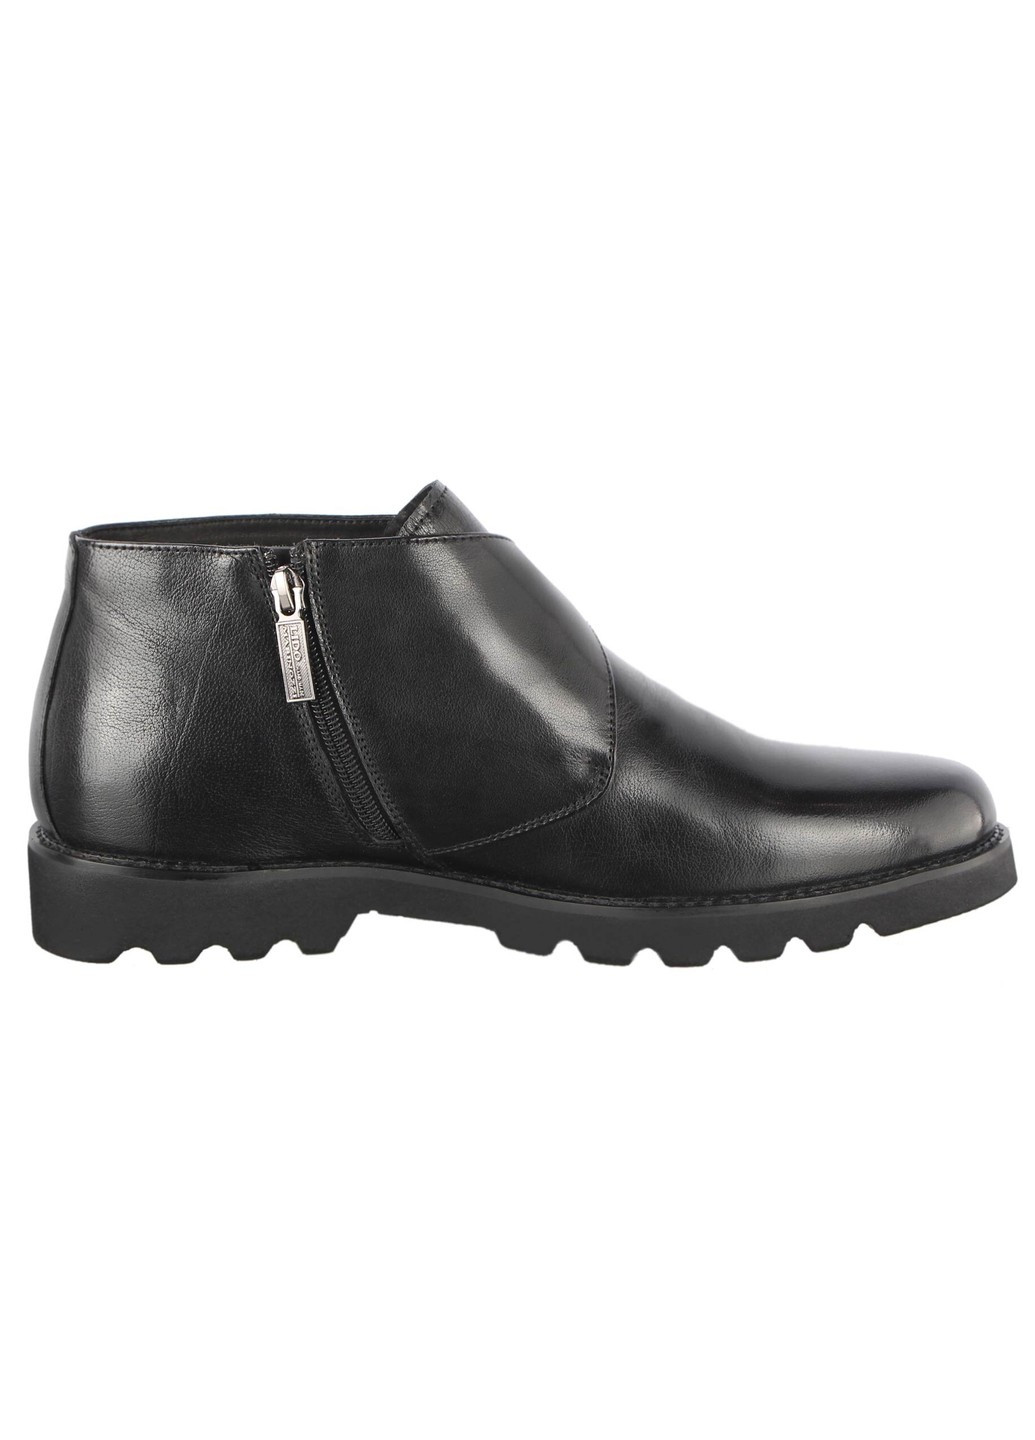 Черные зимние мужские зимние ботинки классические 19743 Lido Marinozzi